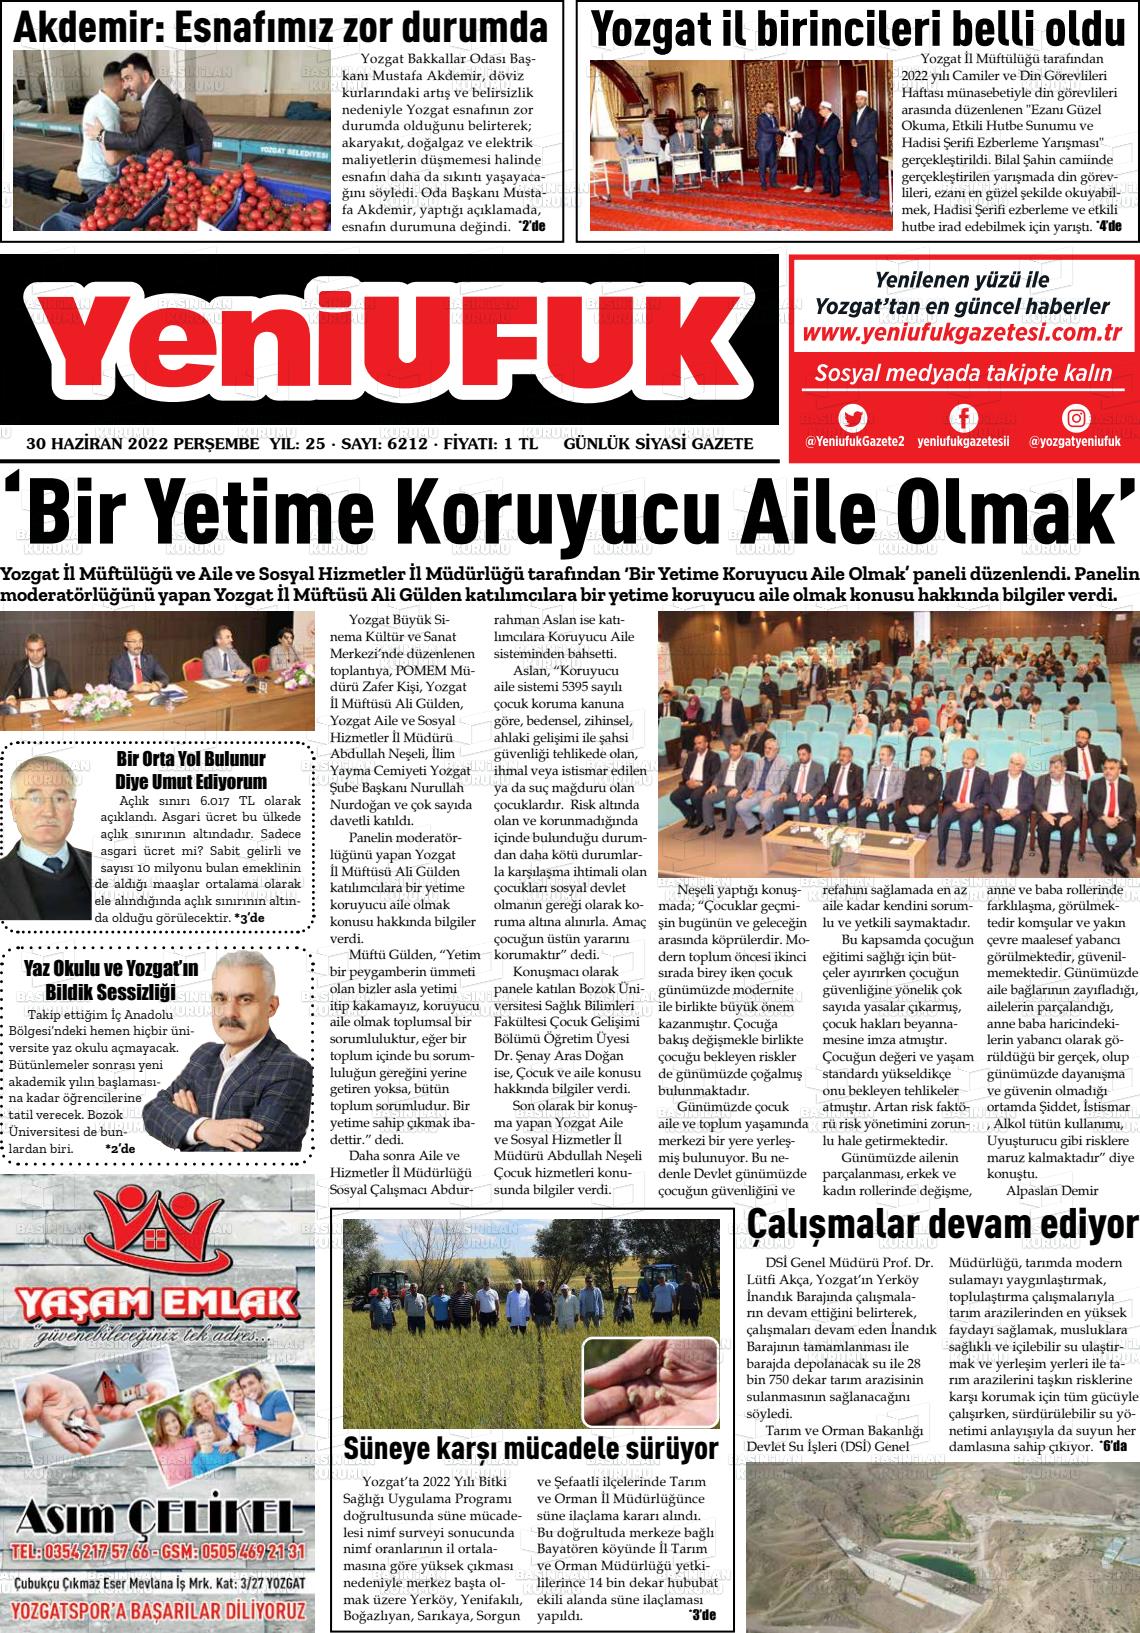 01 Temmuz 2022 Yozgat Yeni Ufuk Gazete Manşeti